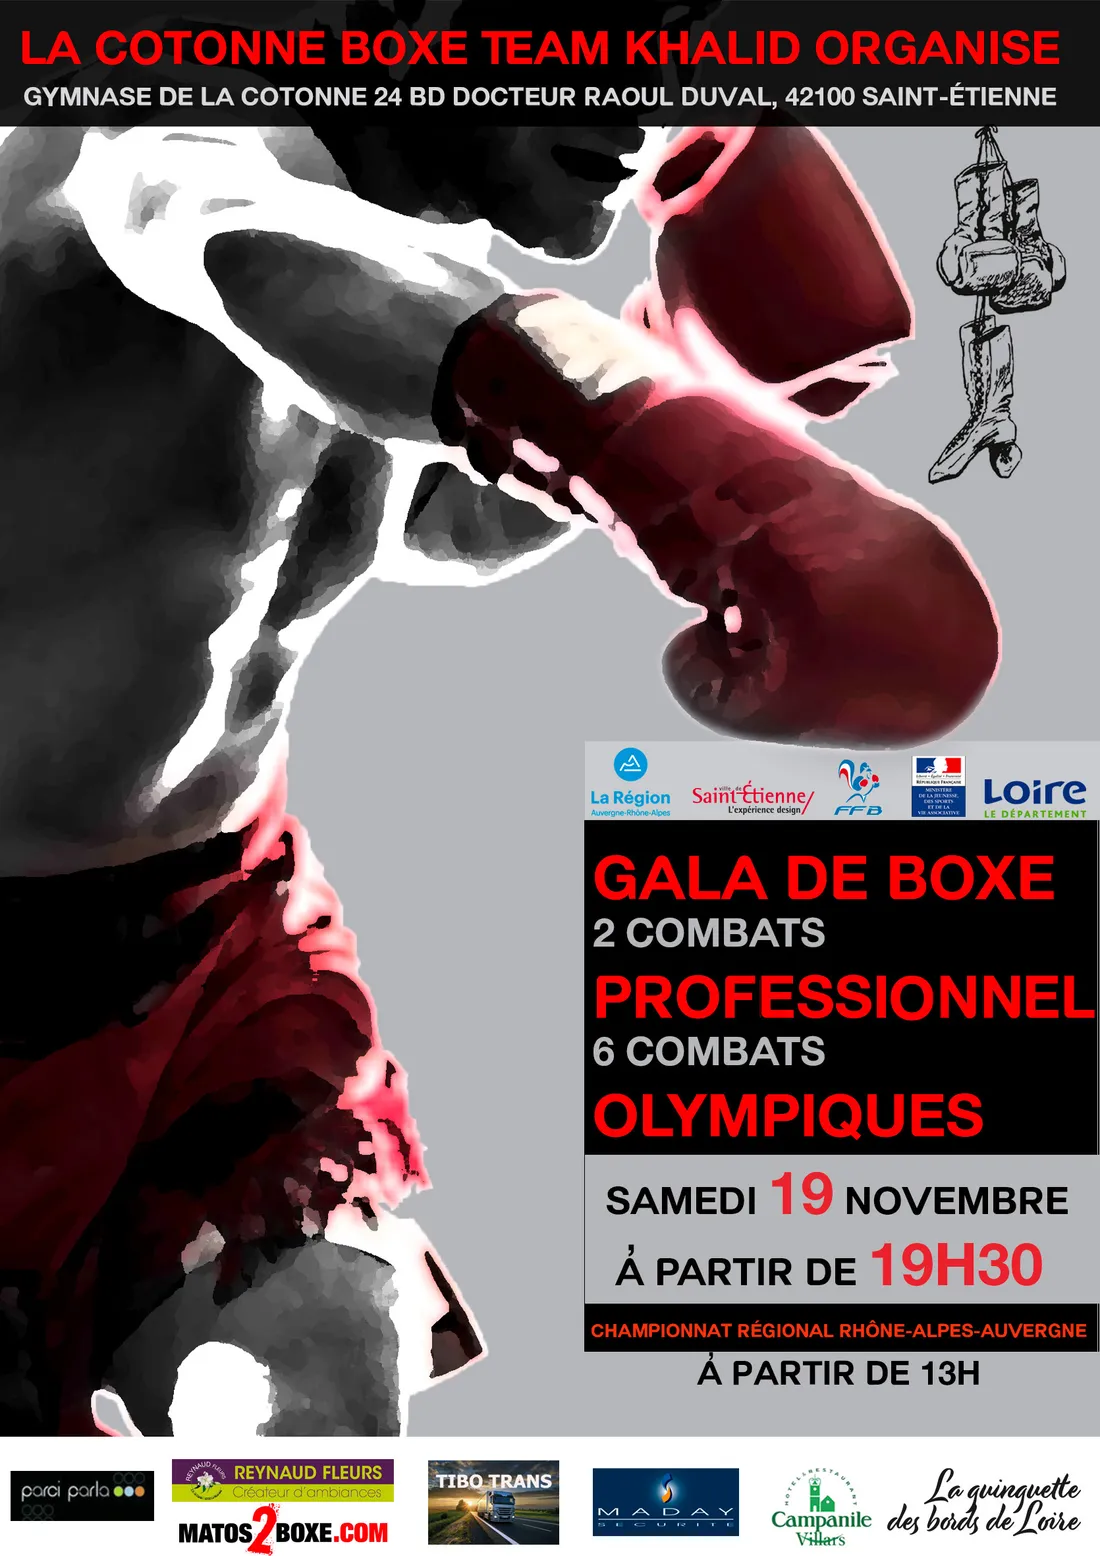 Gala de boxe à St-Etienne